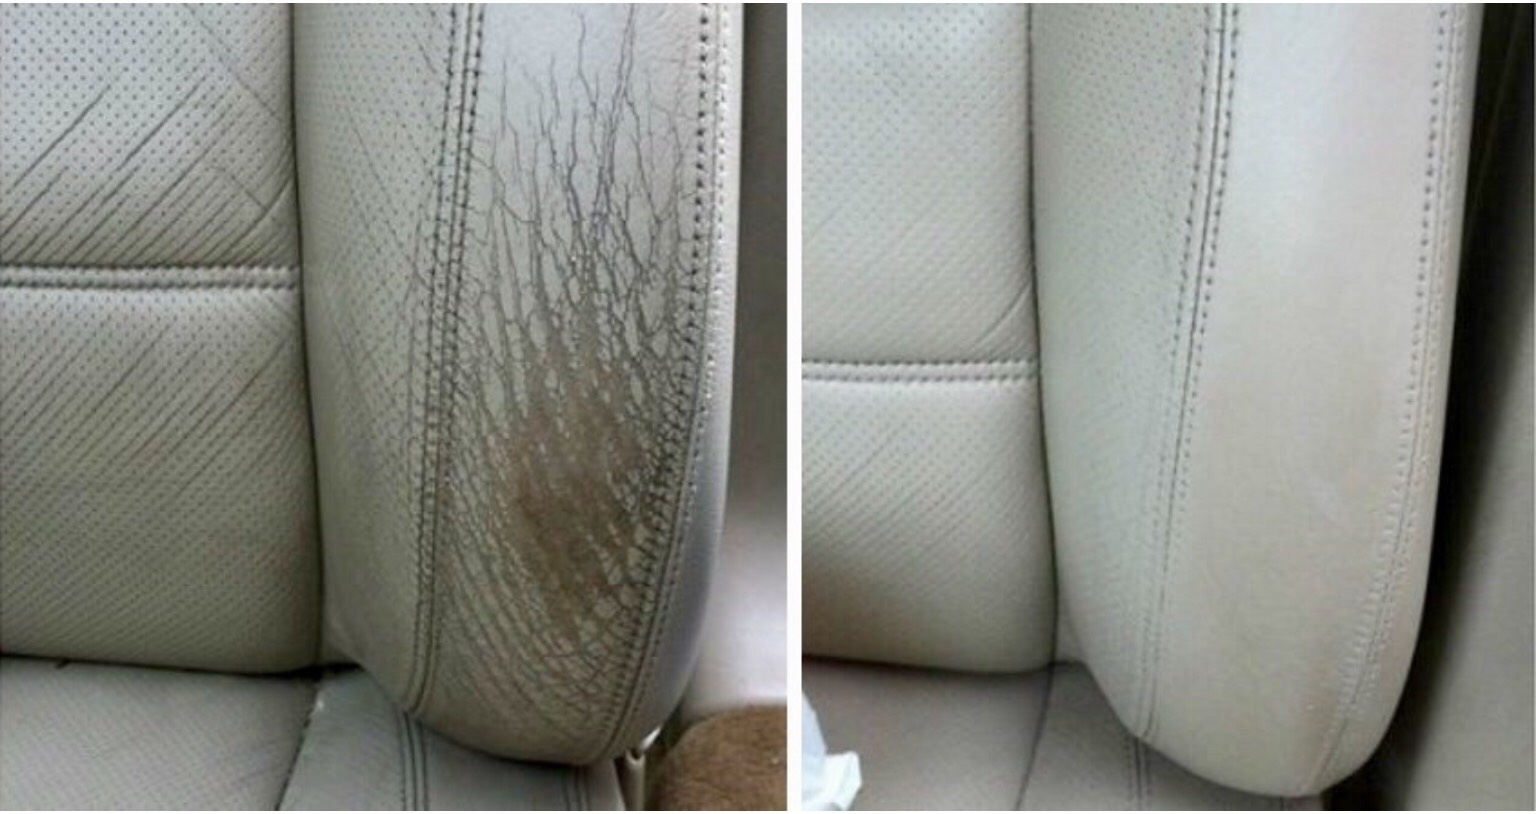 Car Seat Repair Smart Choice Center - Leather Seat Repair For Cars